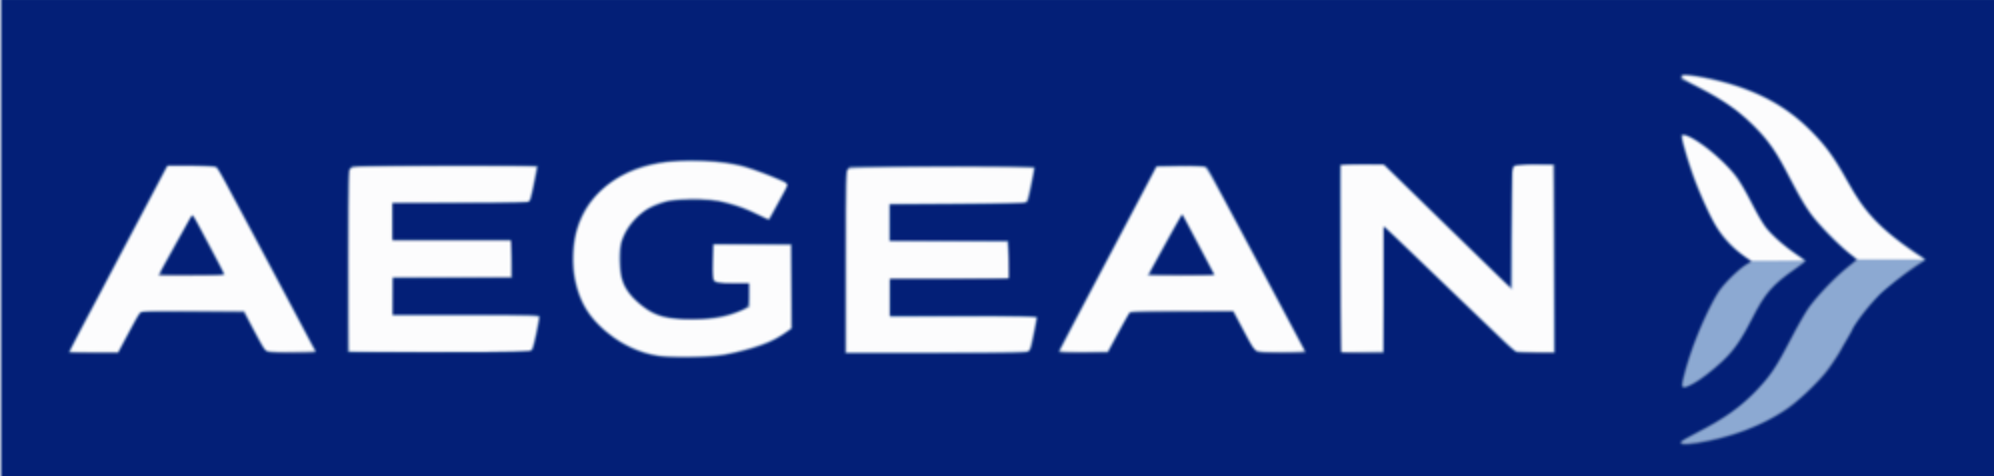 希腊爱琴海航空公司Aegean Airlines新启航新logo